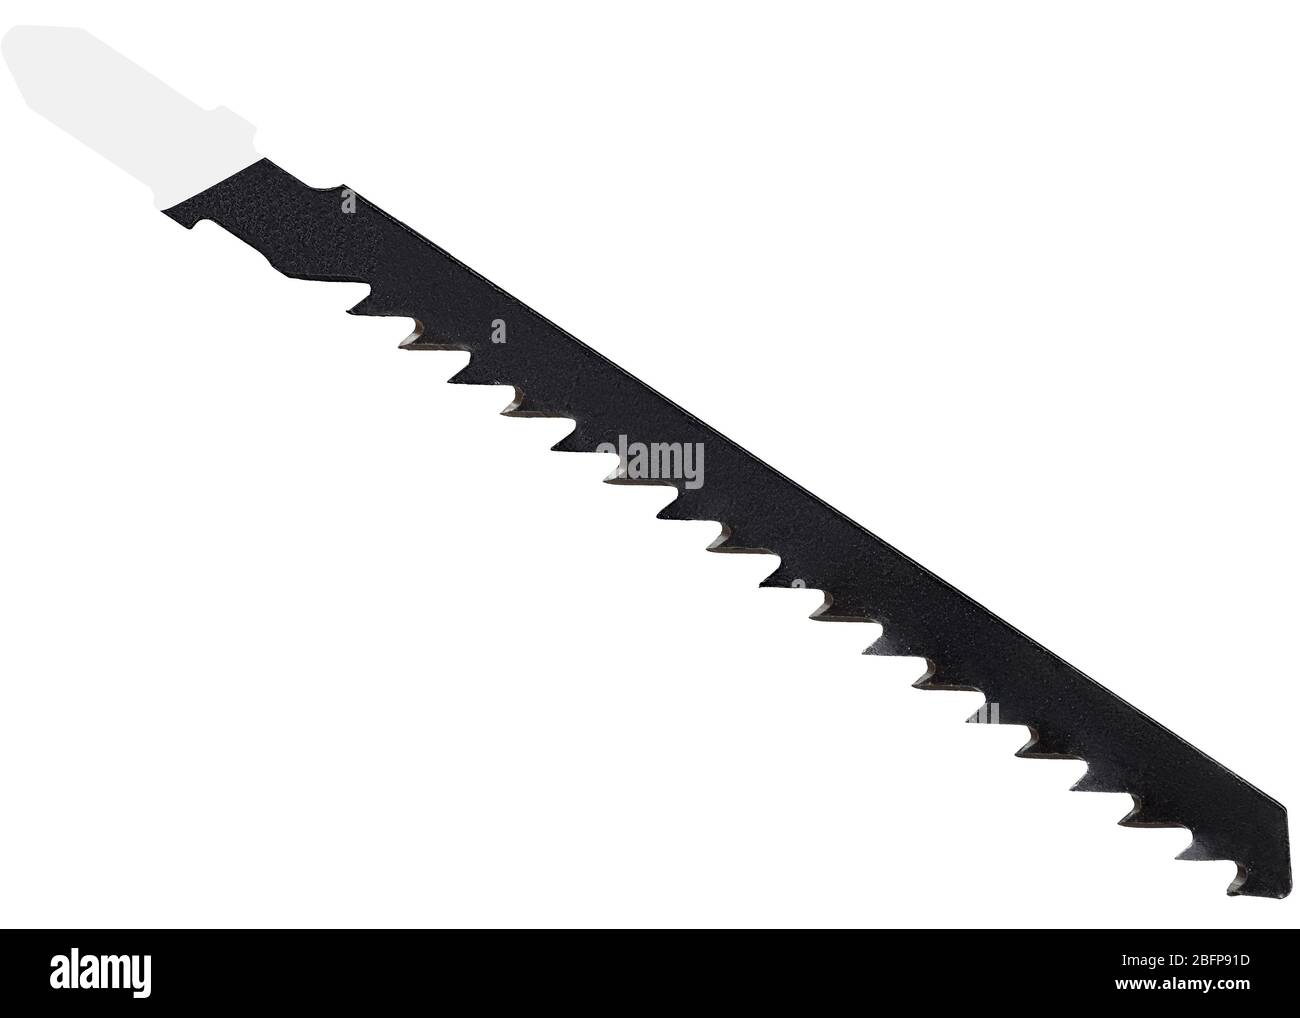 Hoja para sierra de calar (herramienta eléctrica) para sierra de calar de color negro de madera aislada sobre fondo blanco Foto de stock